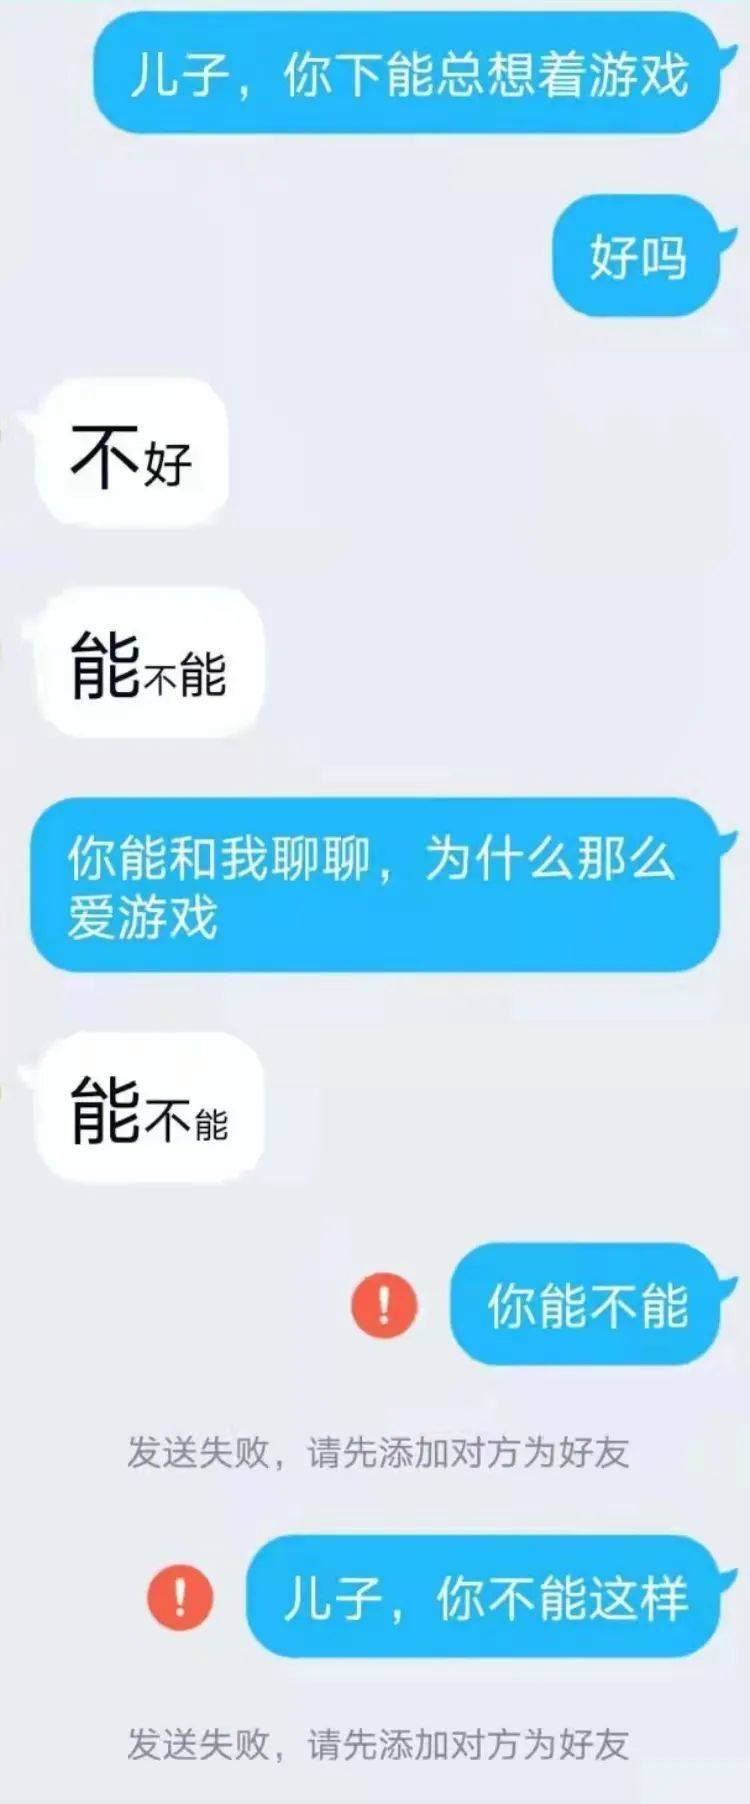 李阳弟弟和母亲的聊天记录，他想让妈妈给他买台新手机。图源：受访者提供